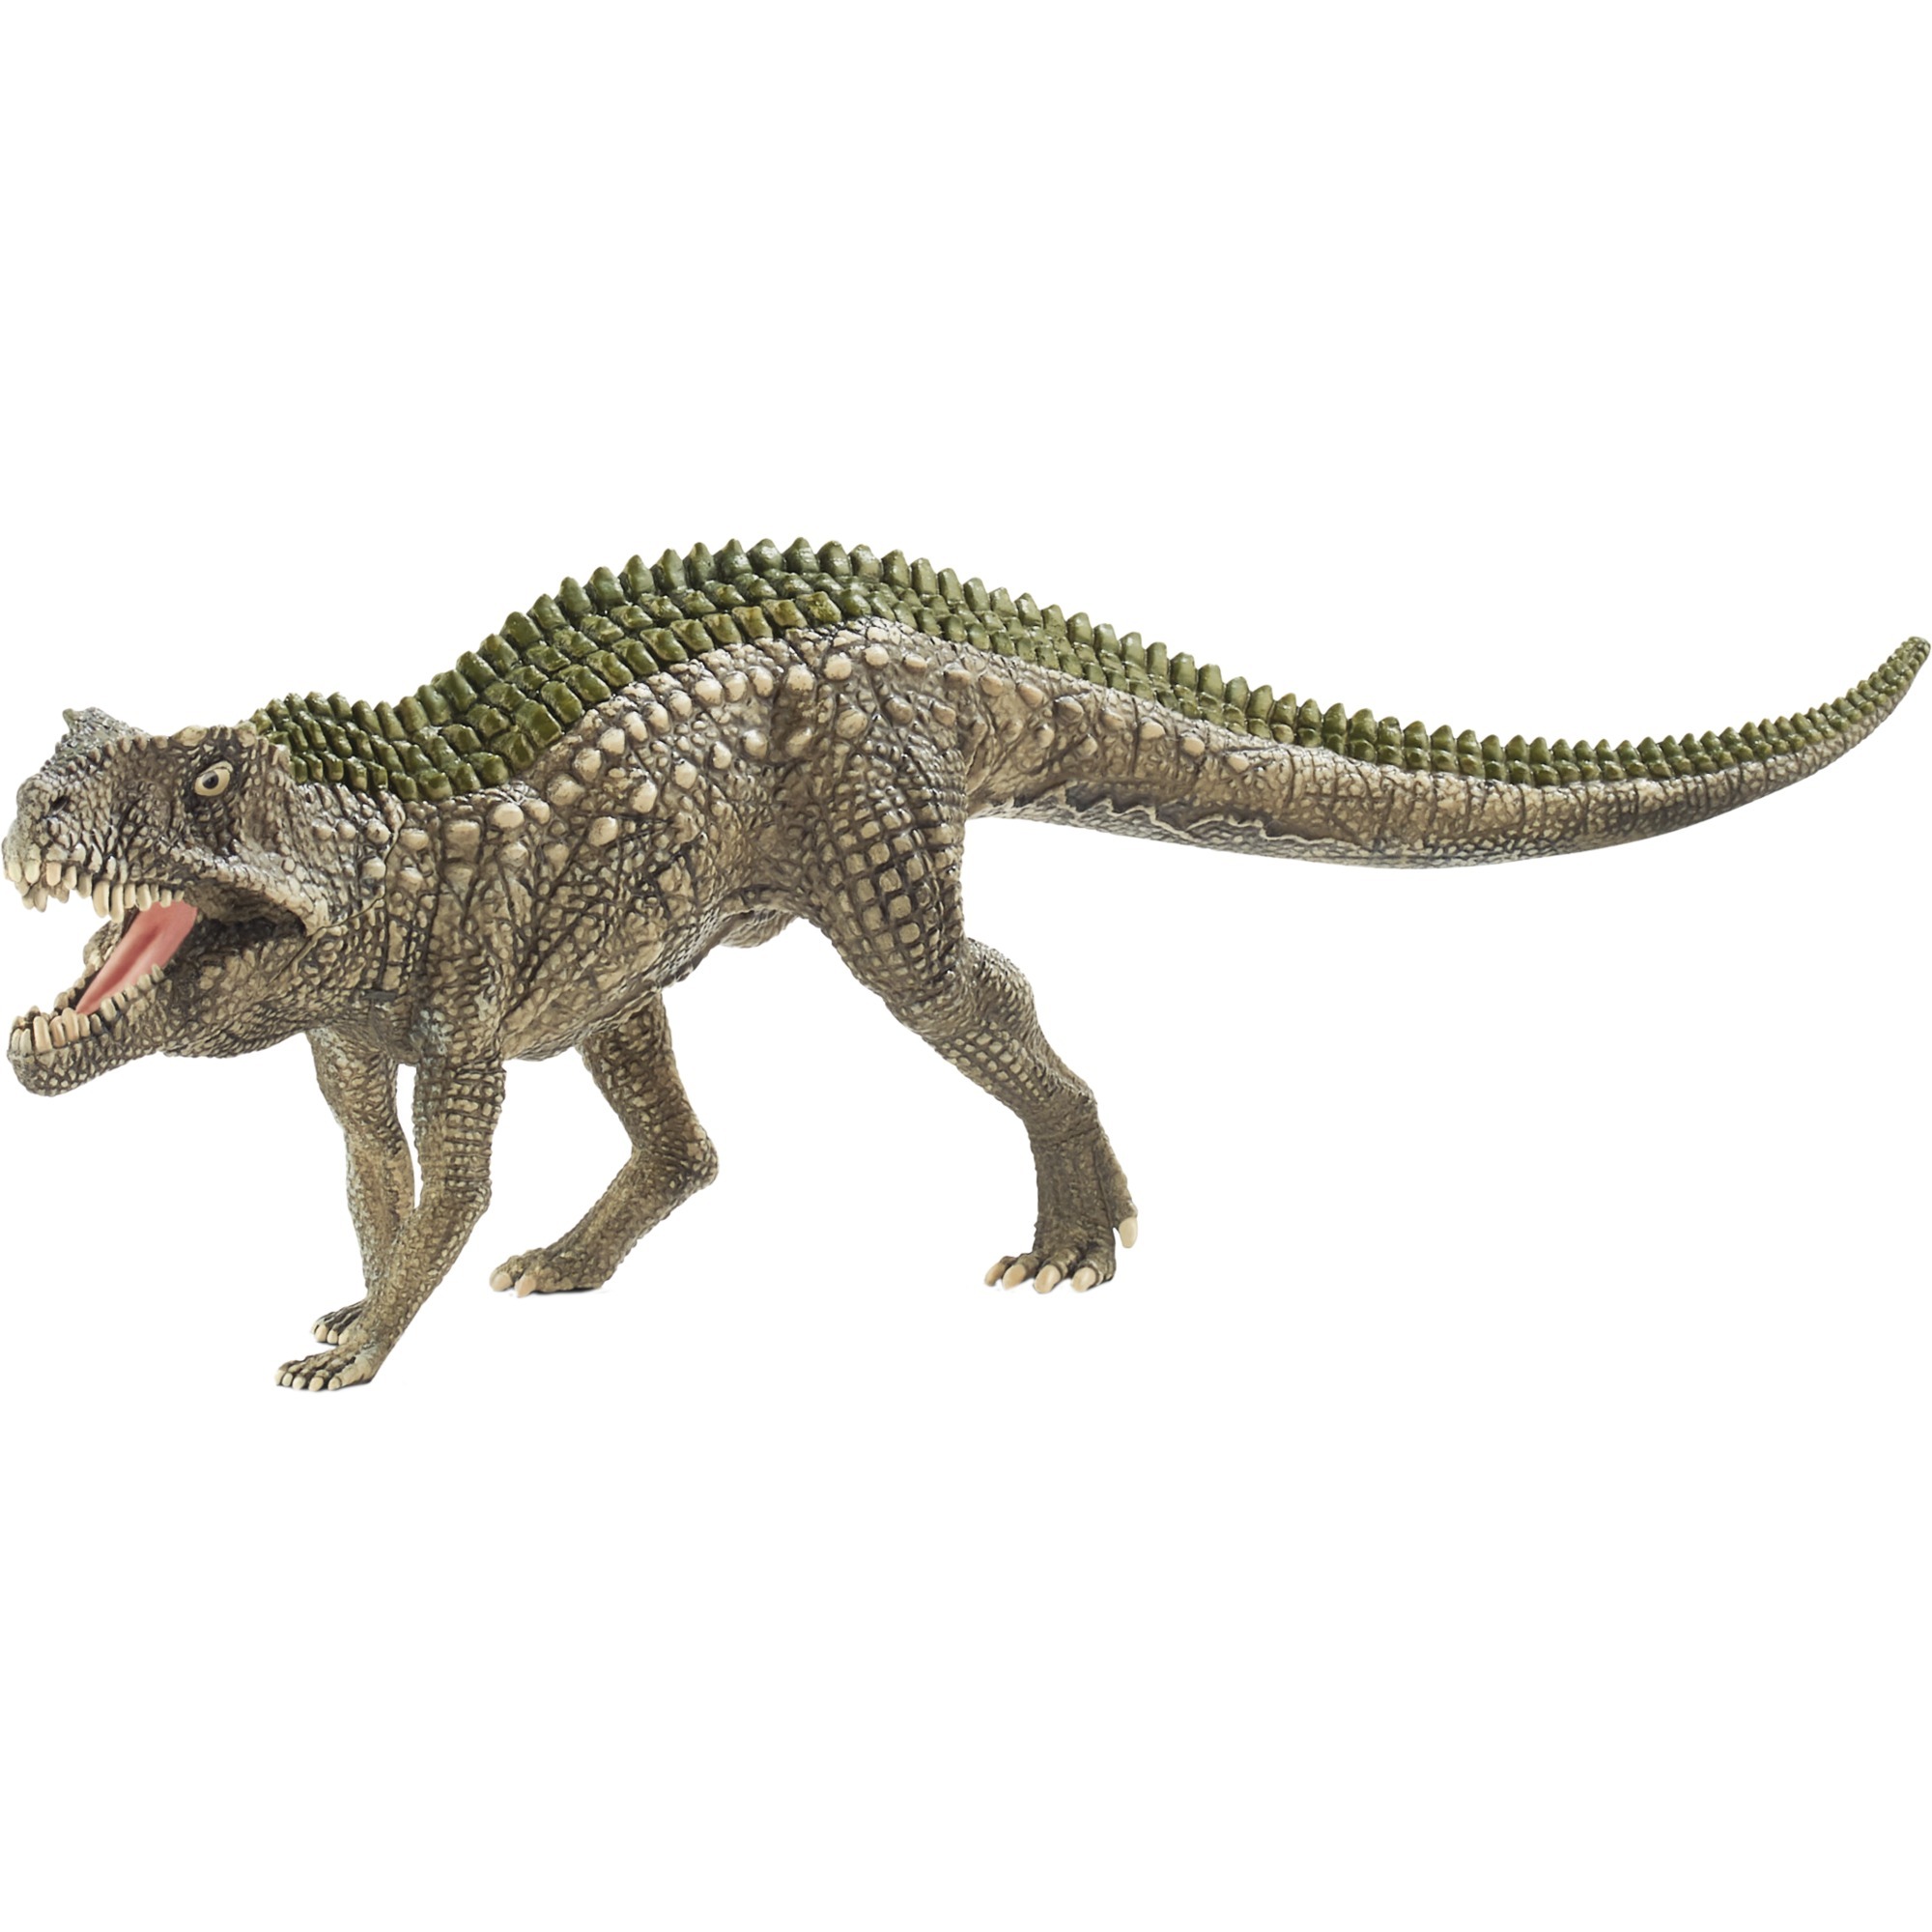 Image of Alternate - Dinosaurs Postosuchus, Spielfigur online einkaufen bei Alternate